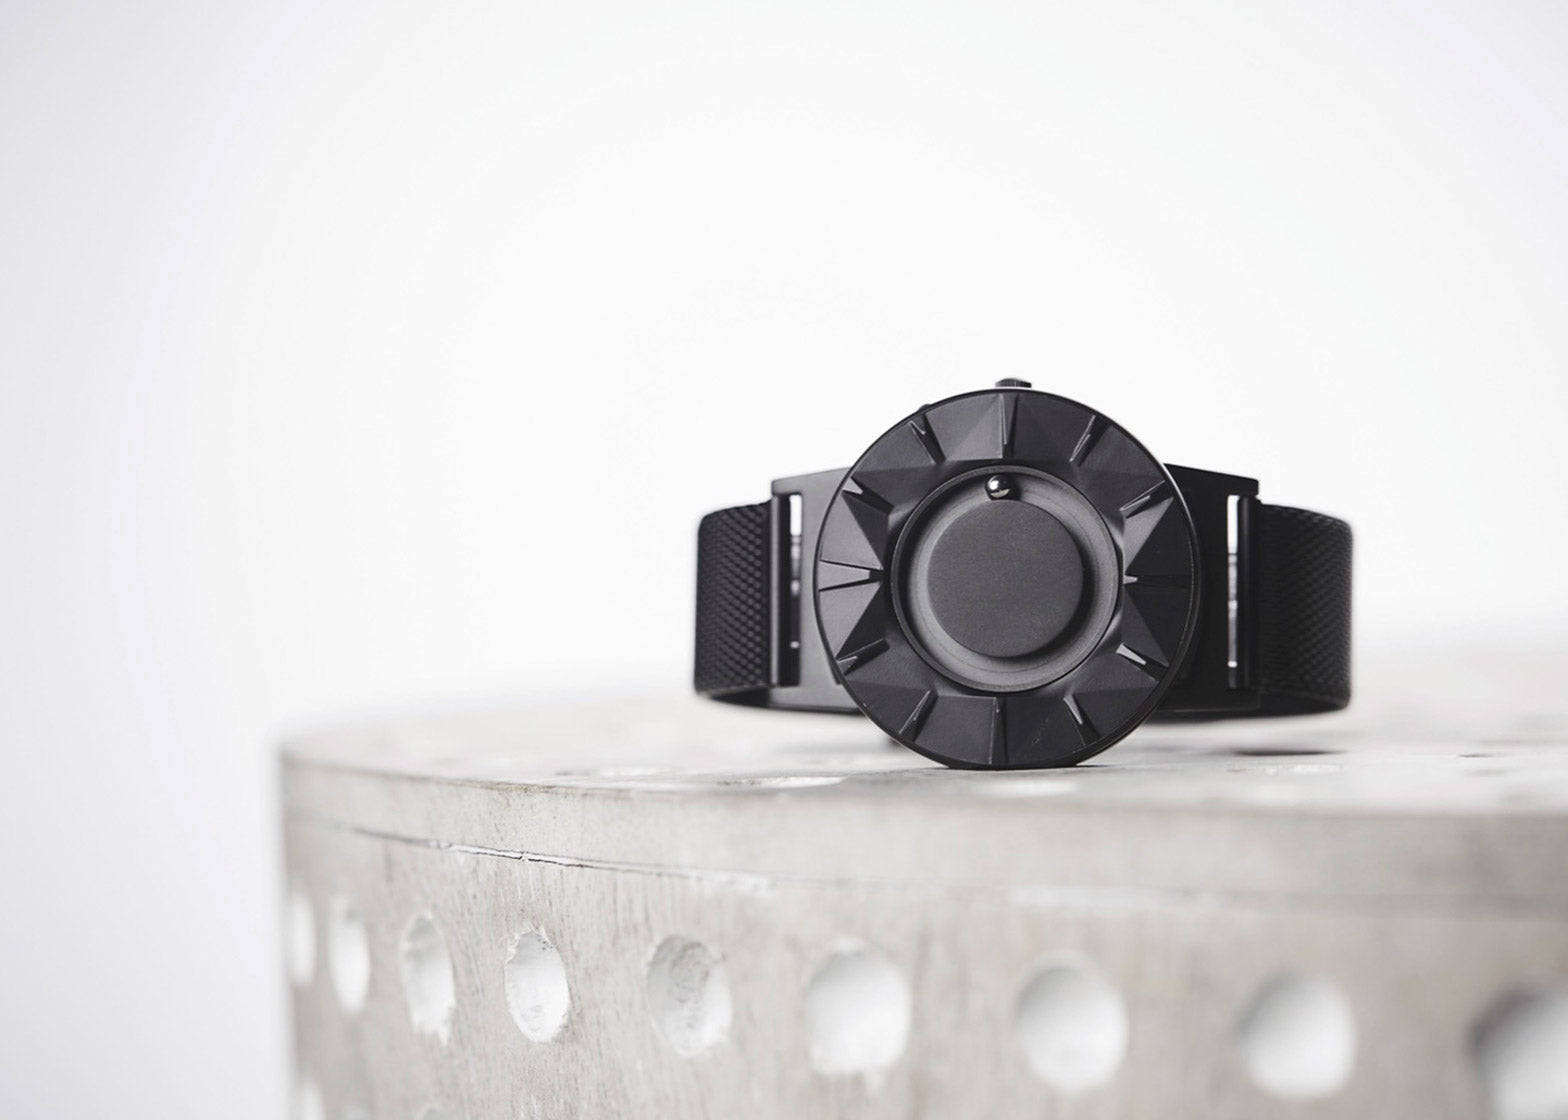 bradley element watch eone fashion product design anniversary dezeen watch store dezeen 1568 2